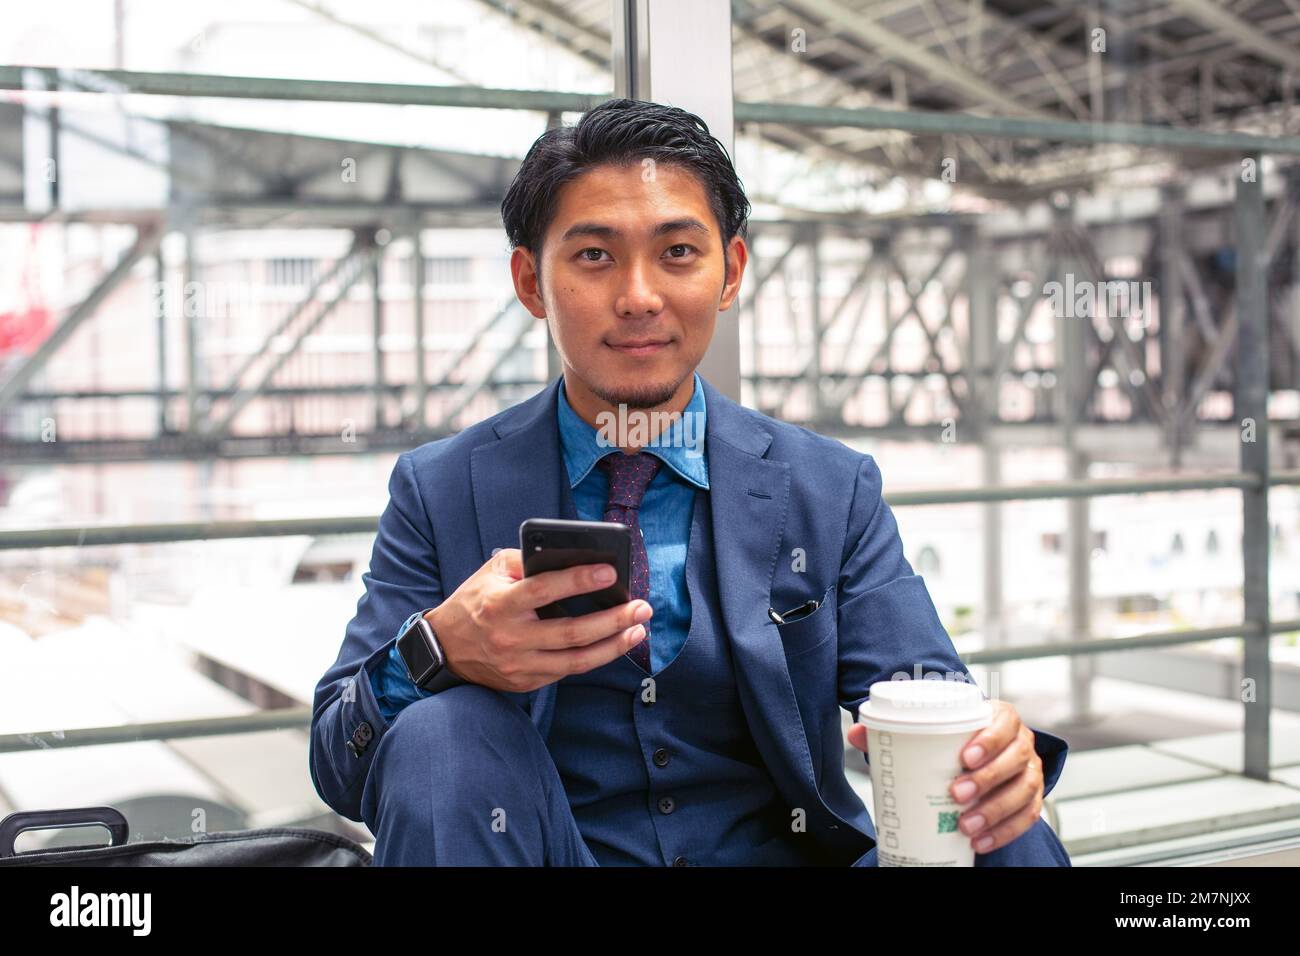 Ein junger Geschäftsmann in einem blauen Anzug in einer Stadt, der auf sein Handy schaut, eine SMS schreibt oder eine Nachricht liest. Stockfoto